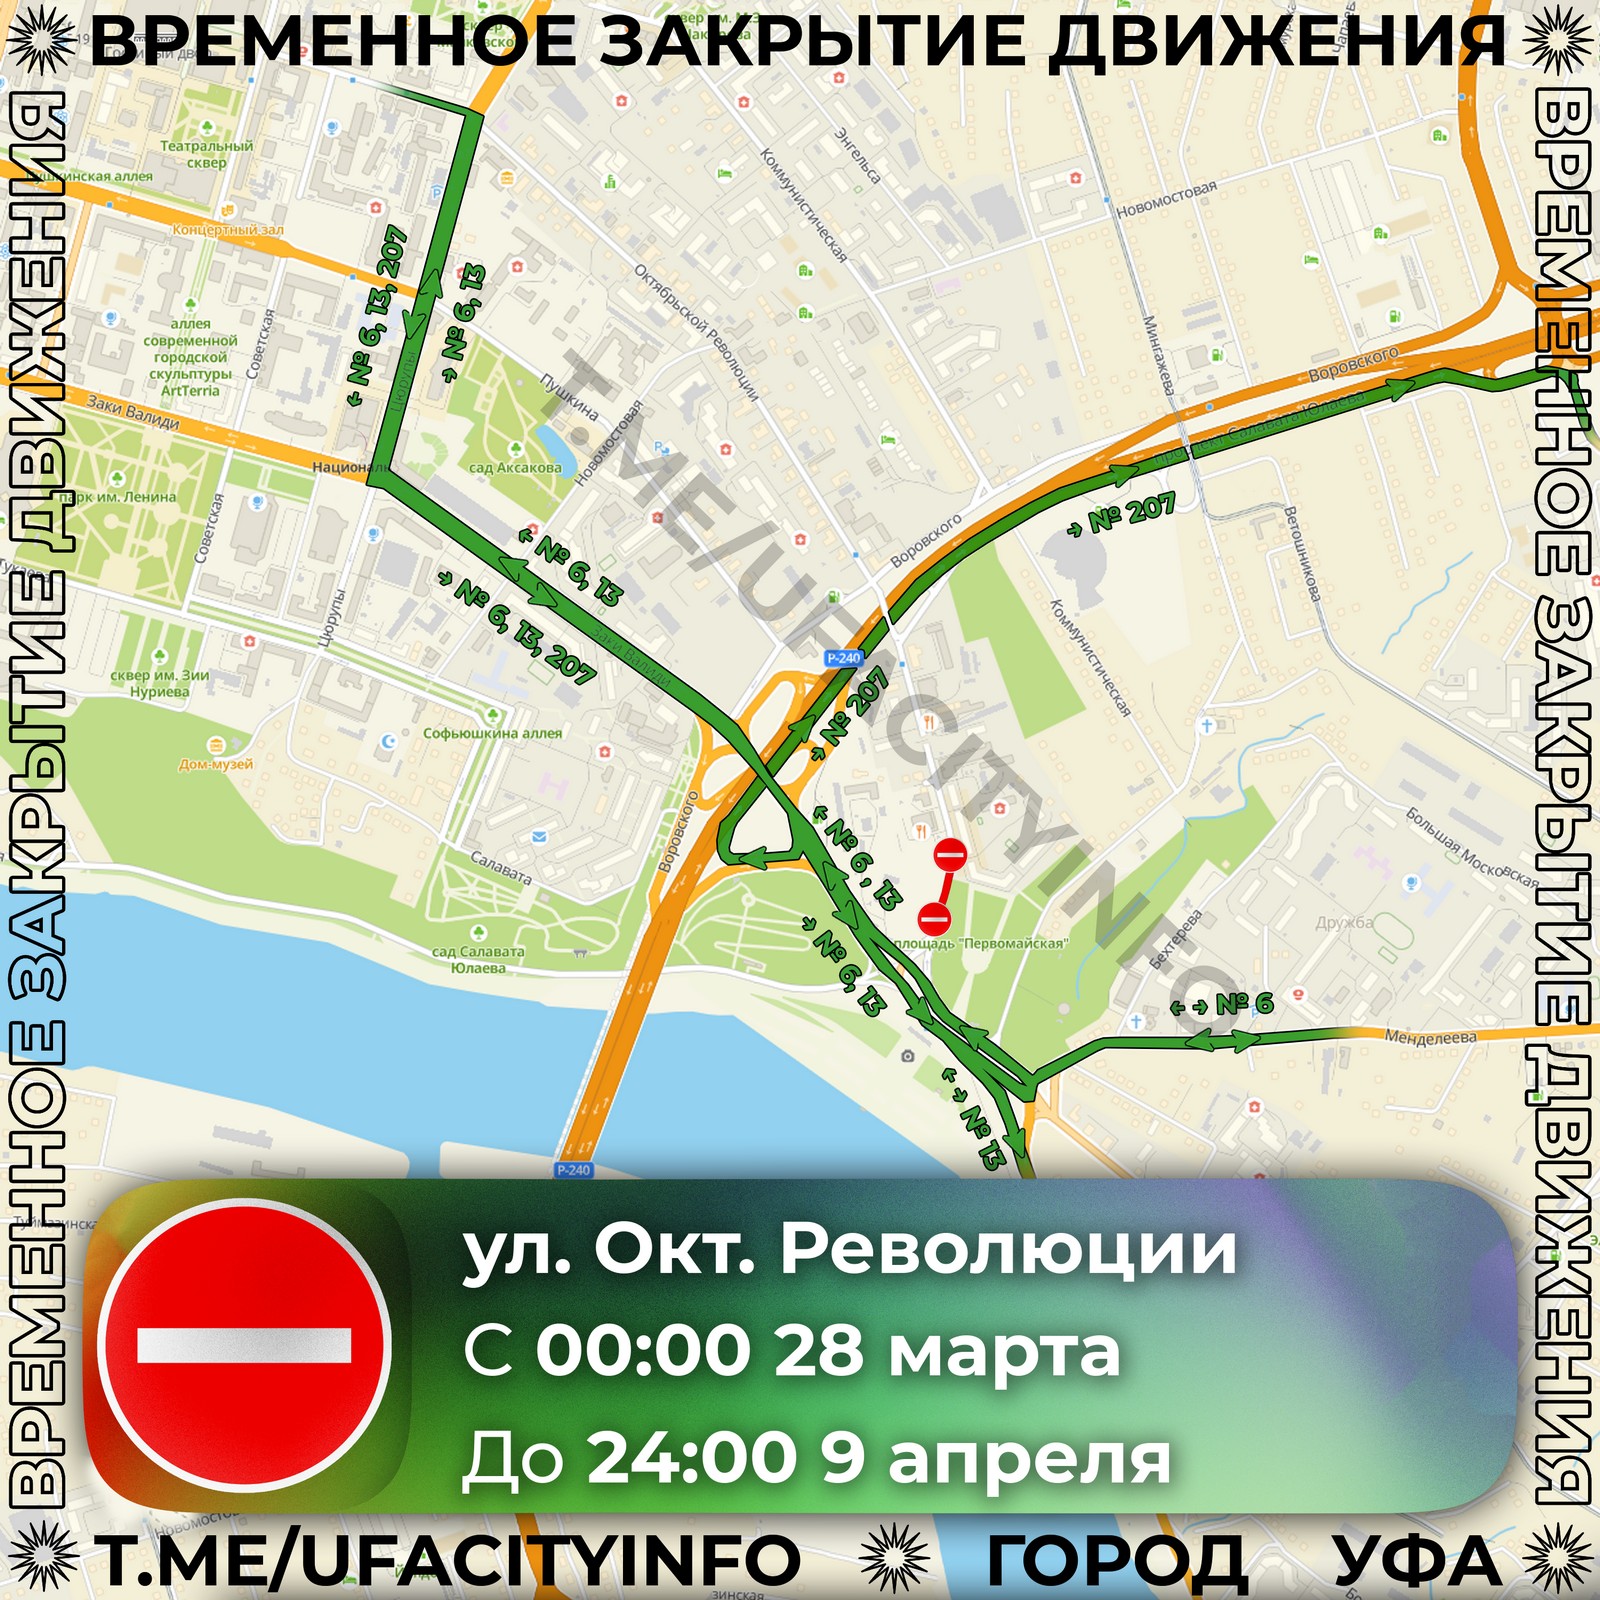 На участке улицы Октябрьской революции перекроют движение автотранспорта